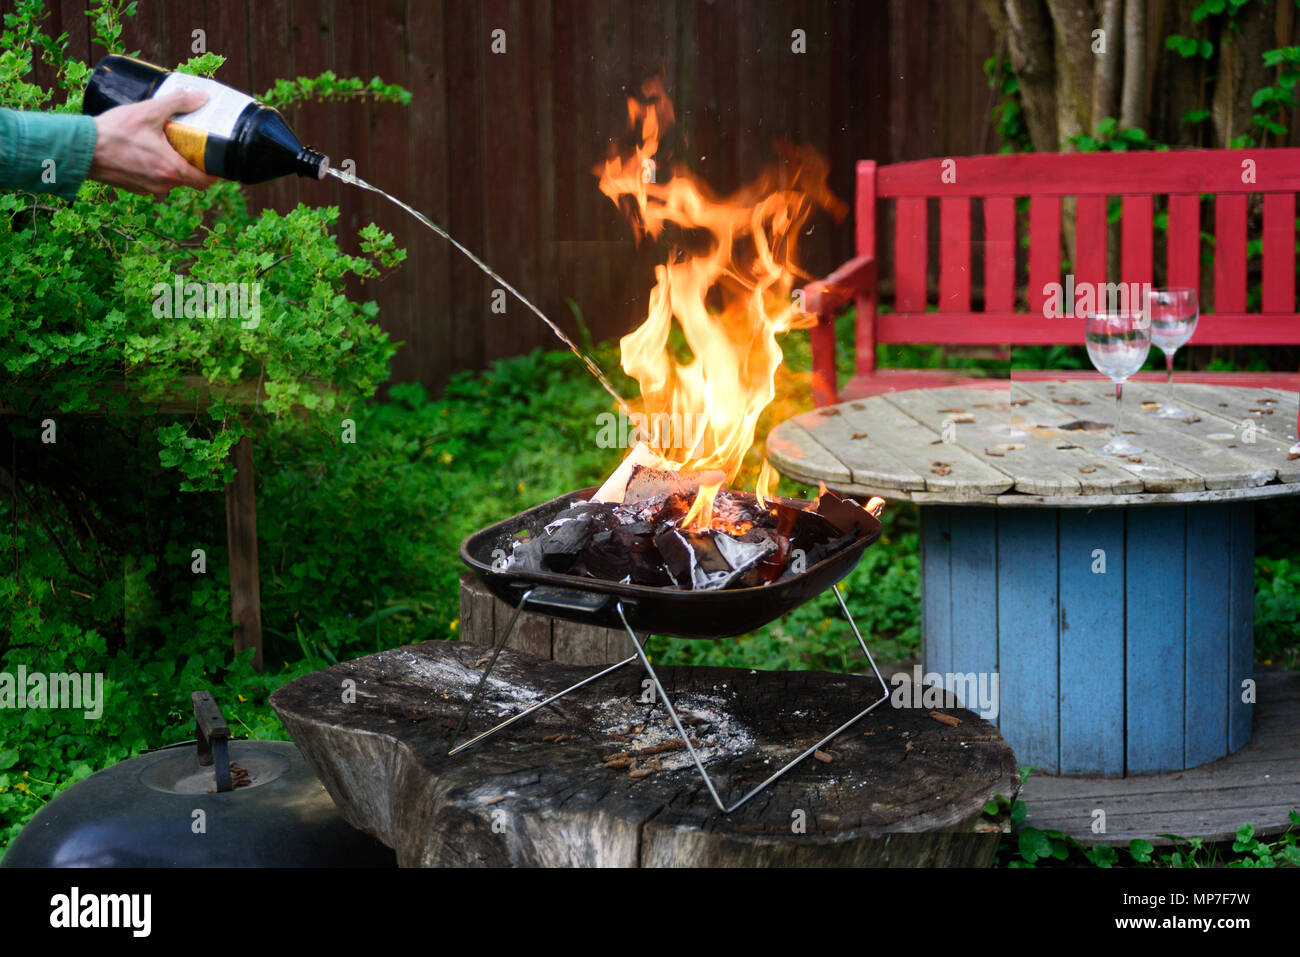 Man Hände Feuer machen BBQ Grill auf tragbaren grilleware mit Feuern bis  Flüssigkeit Stockfotografie - Alamy